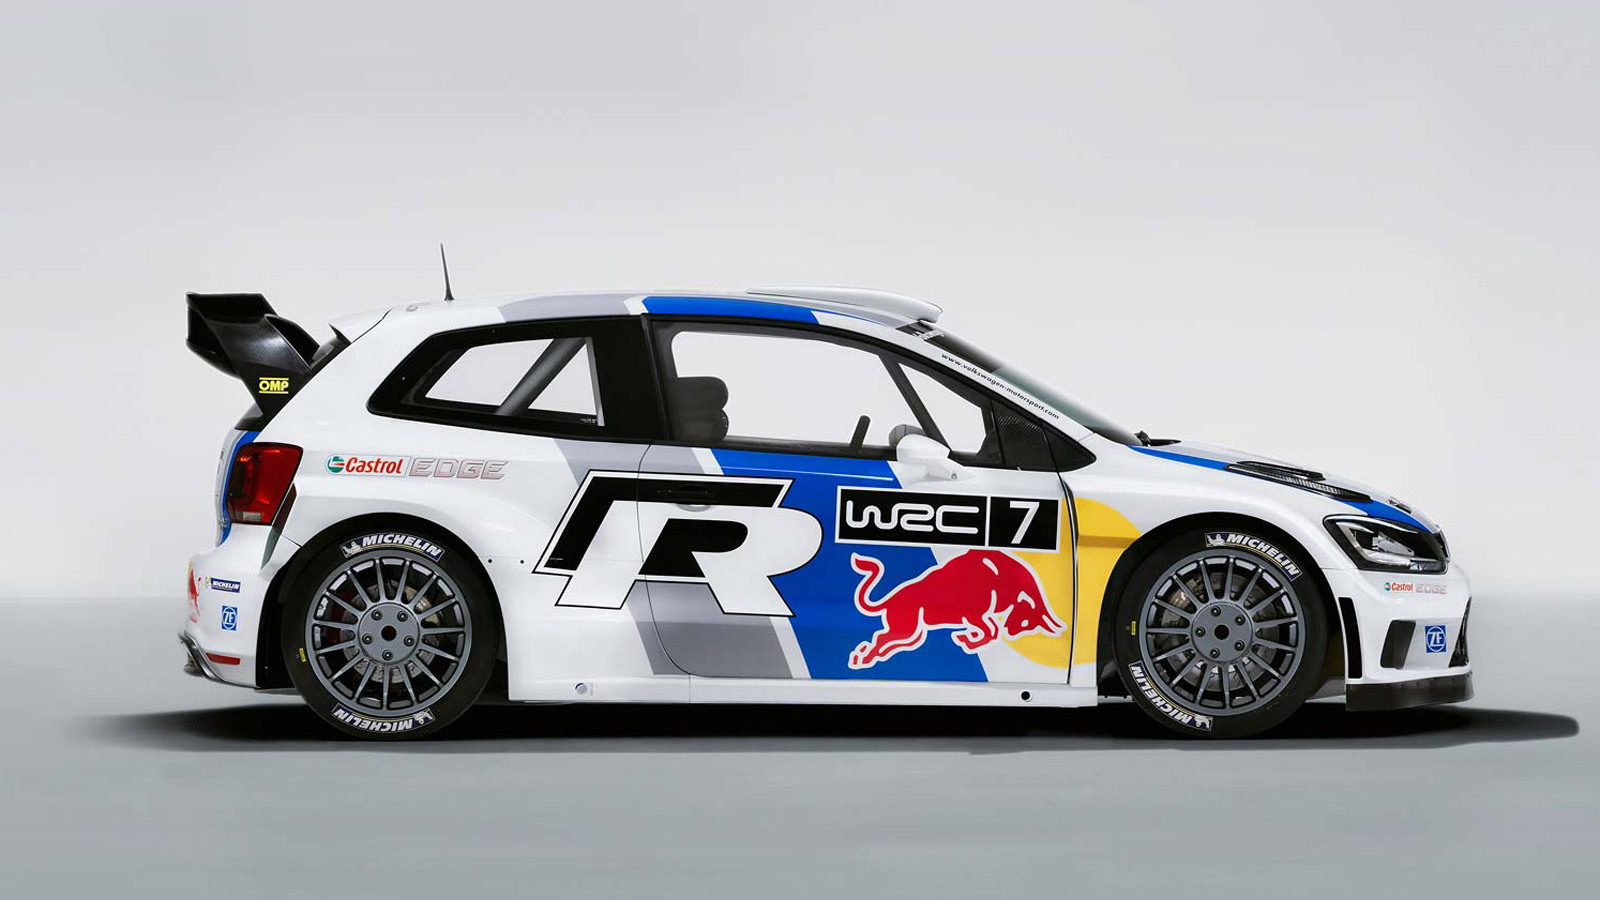 2013 Volkswagen Polo R WRC race car